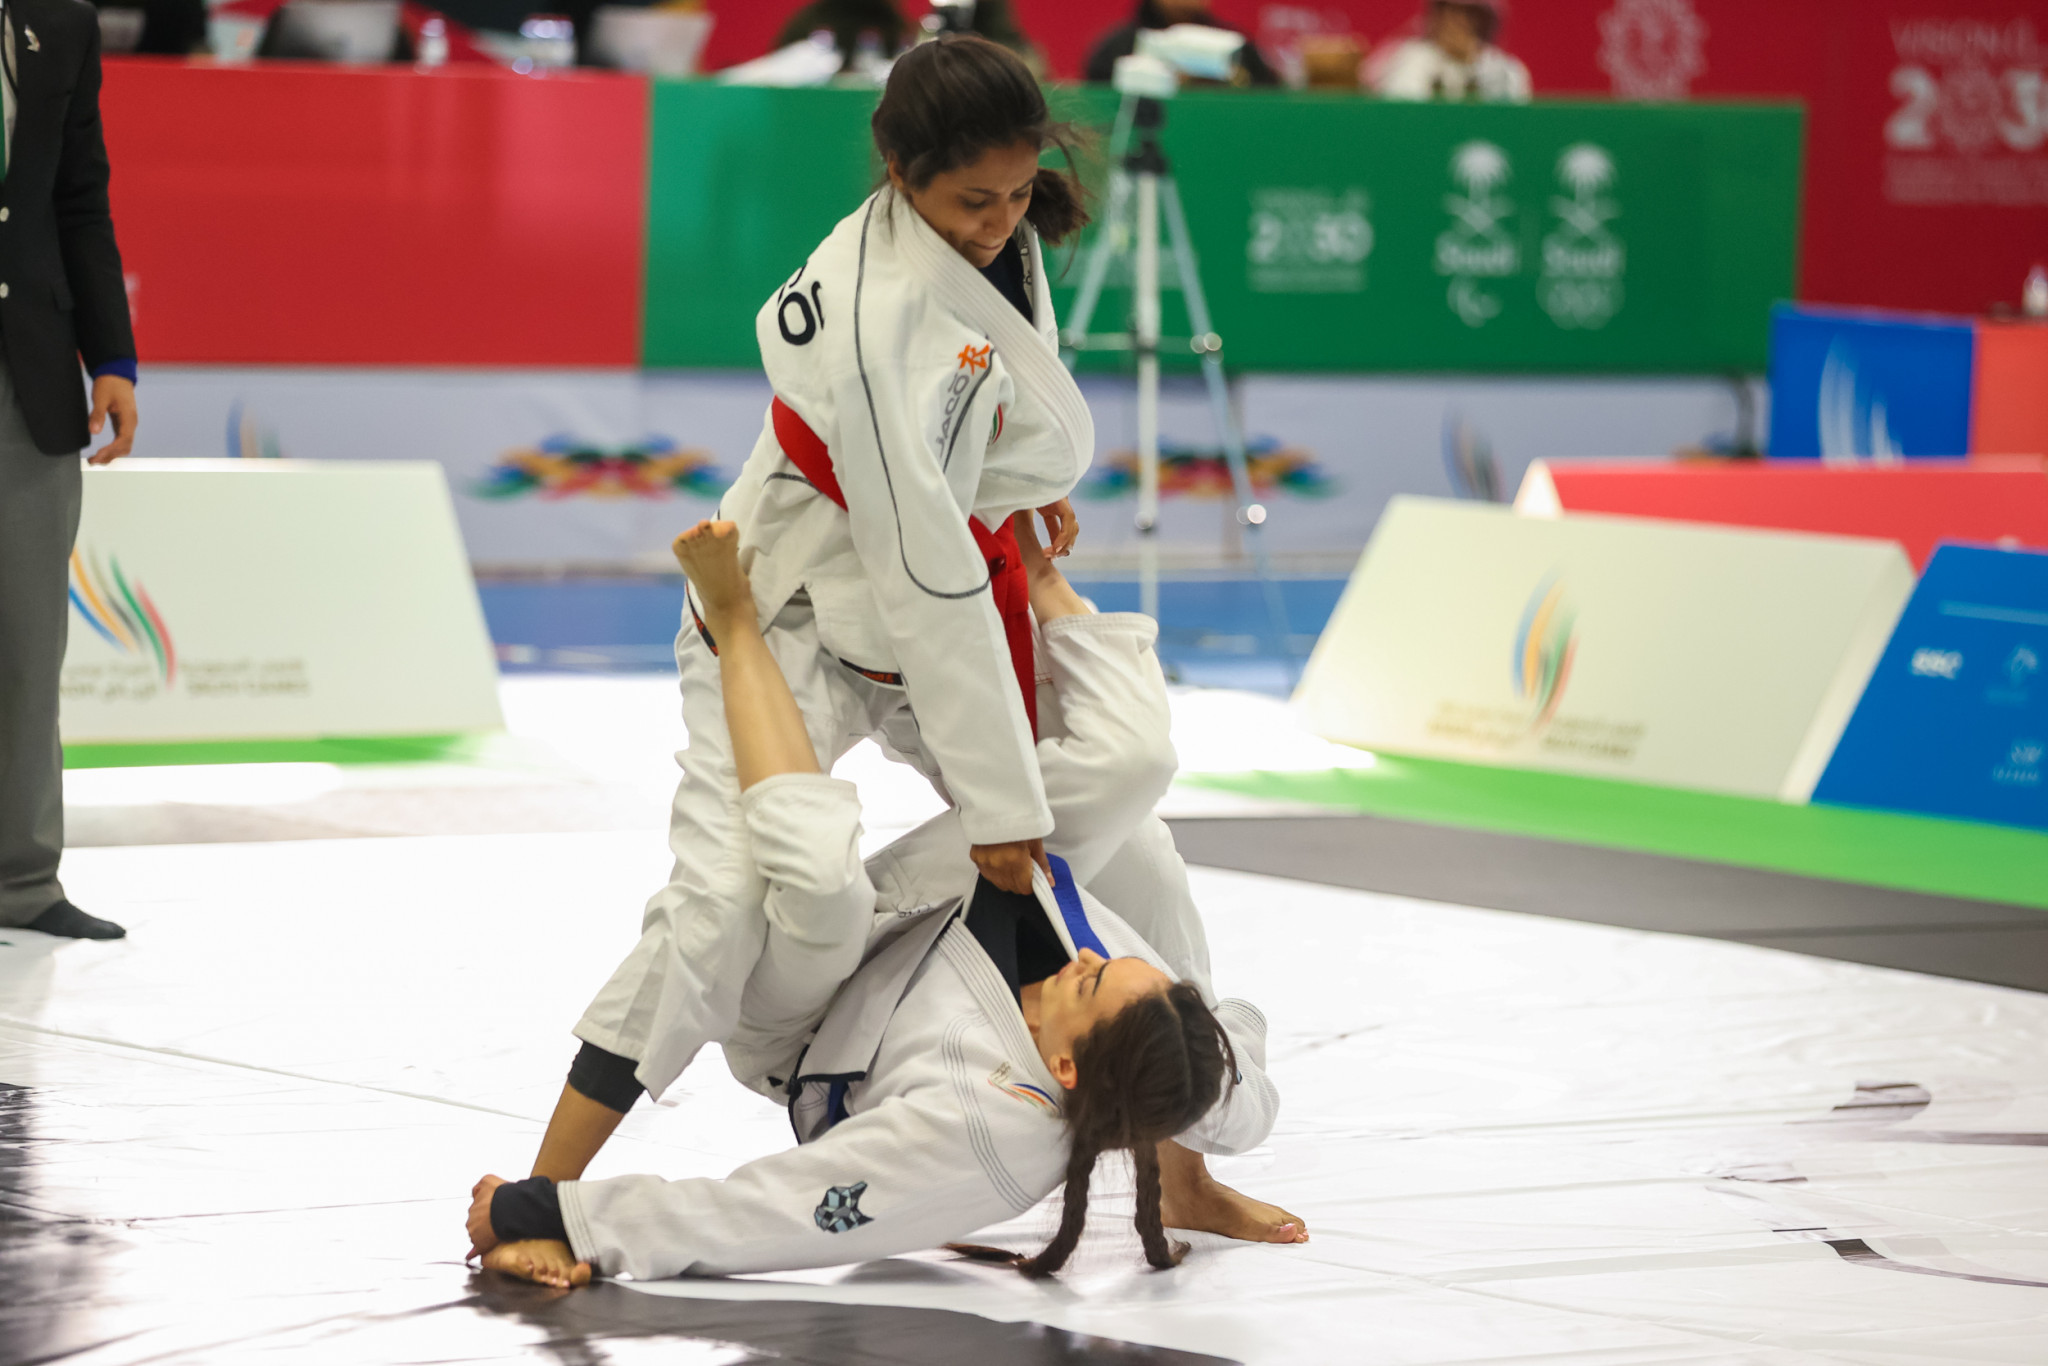 Jujitsu fighters battled for gold medals ©Saudi Games 